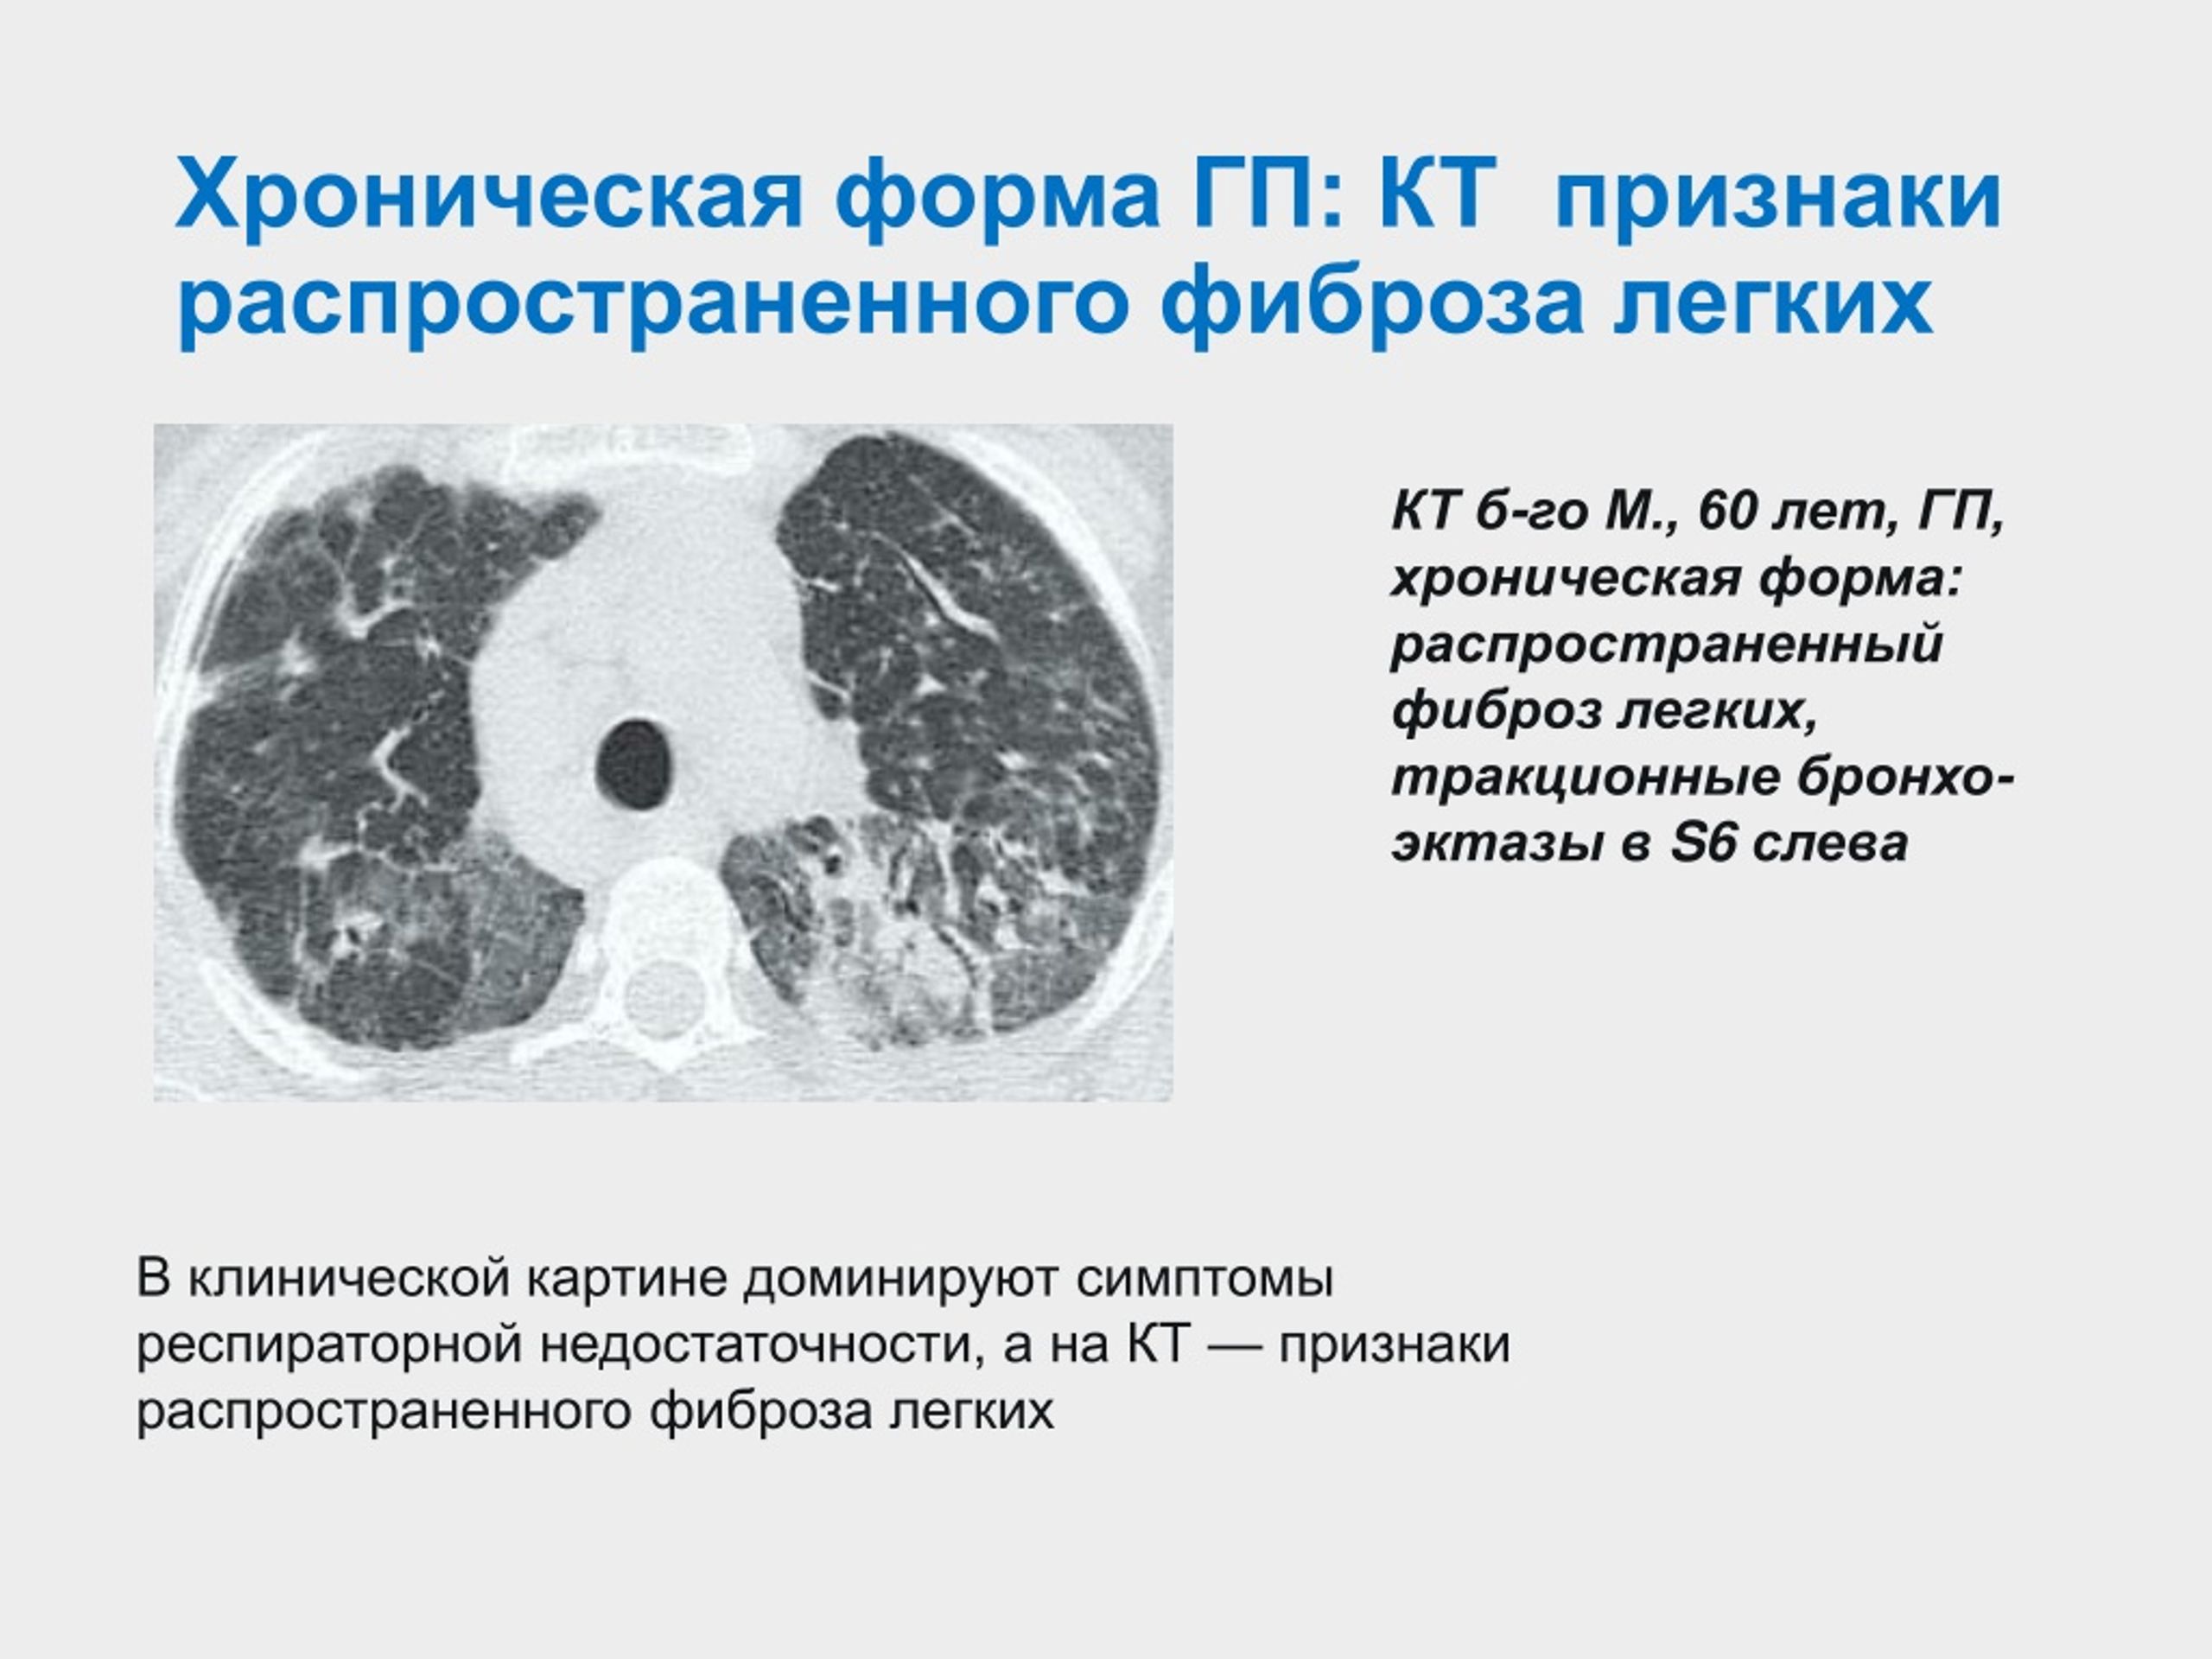 Фиброз после лечения. Интерстициальные заболевания легких кт. Фиброз лёгких на кт. Пневмофиброз на кт легких.